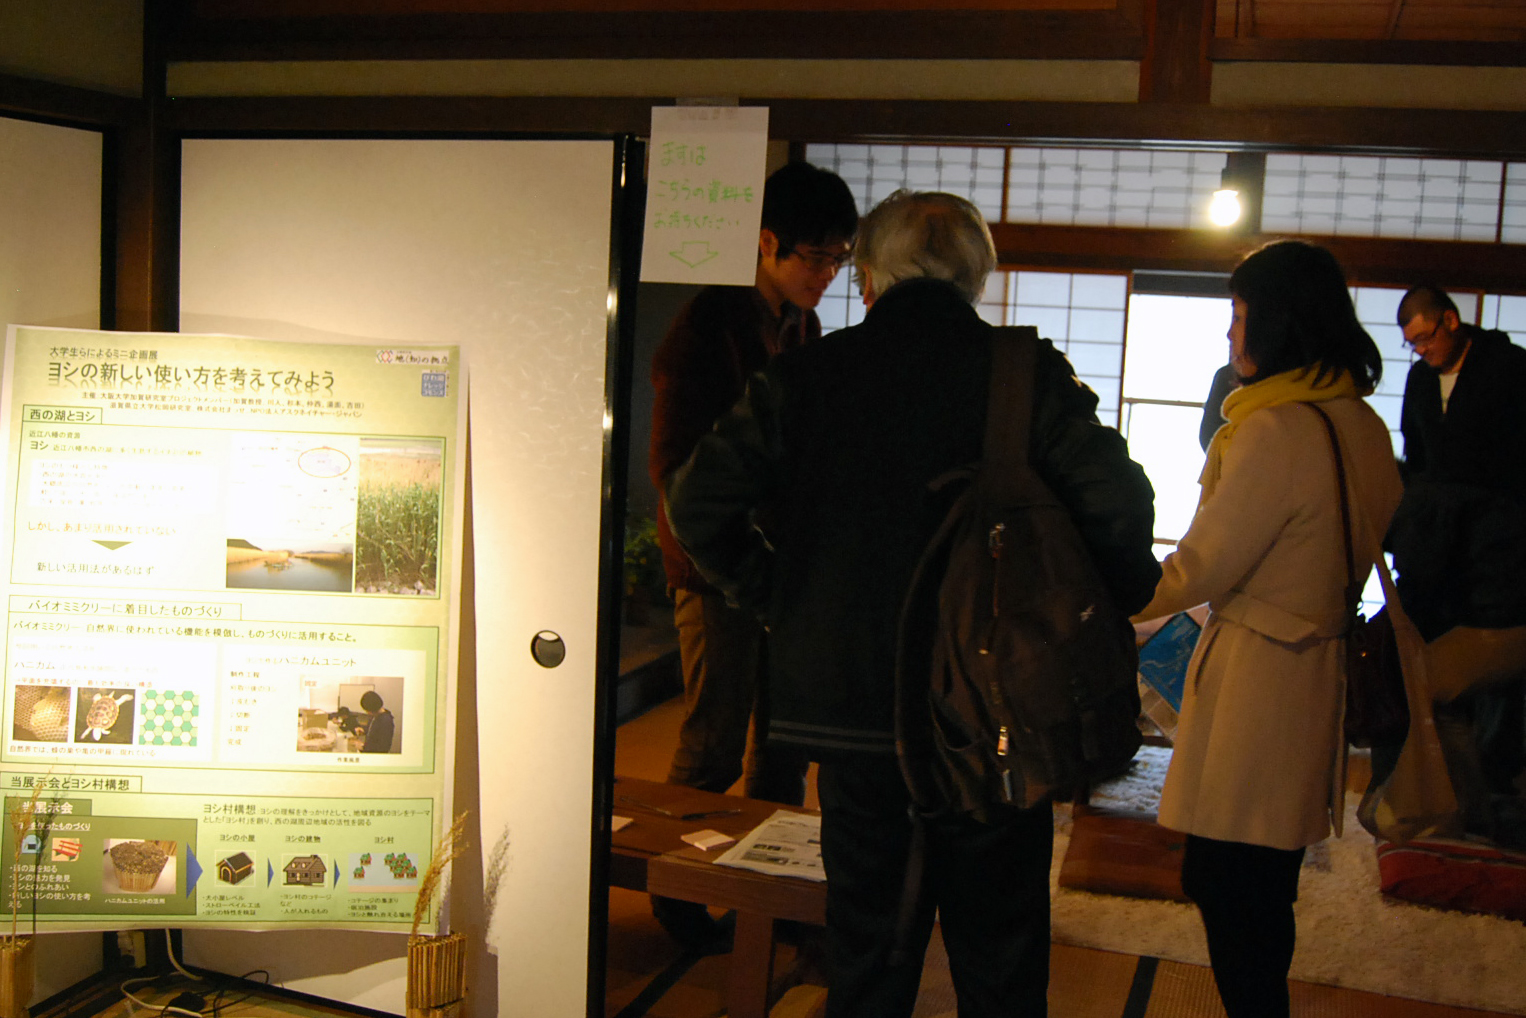 【開催報告】ヨシの新しい使い方を考えてみよう | Ask Nature Japan